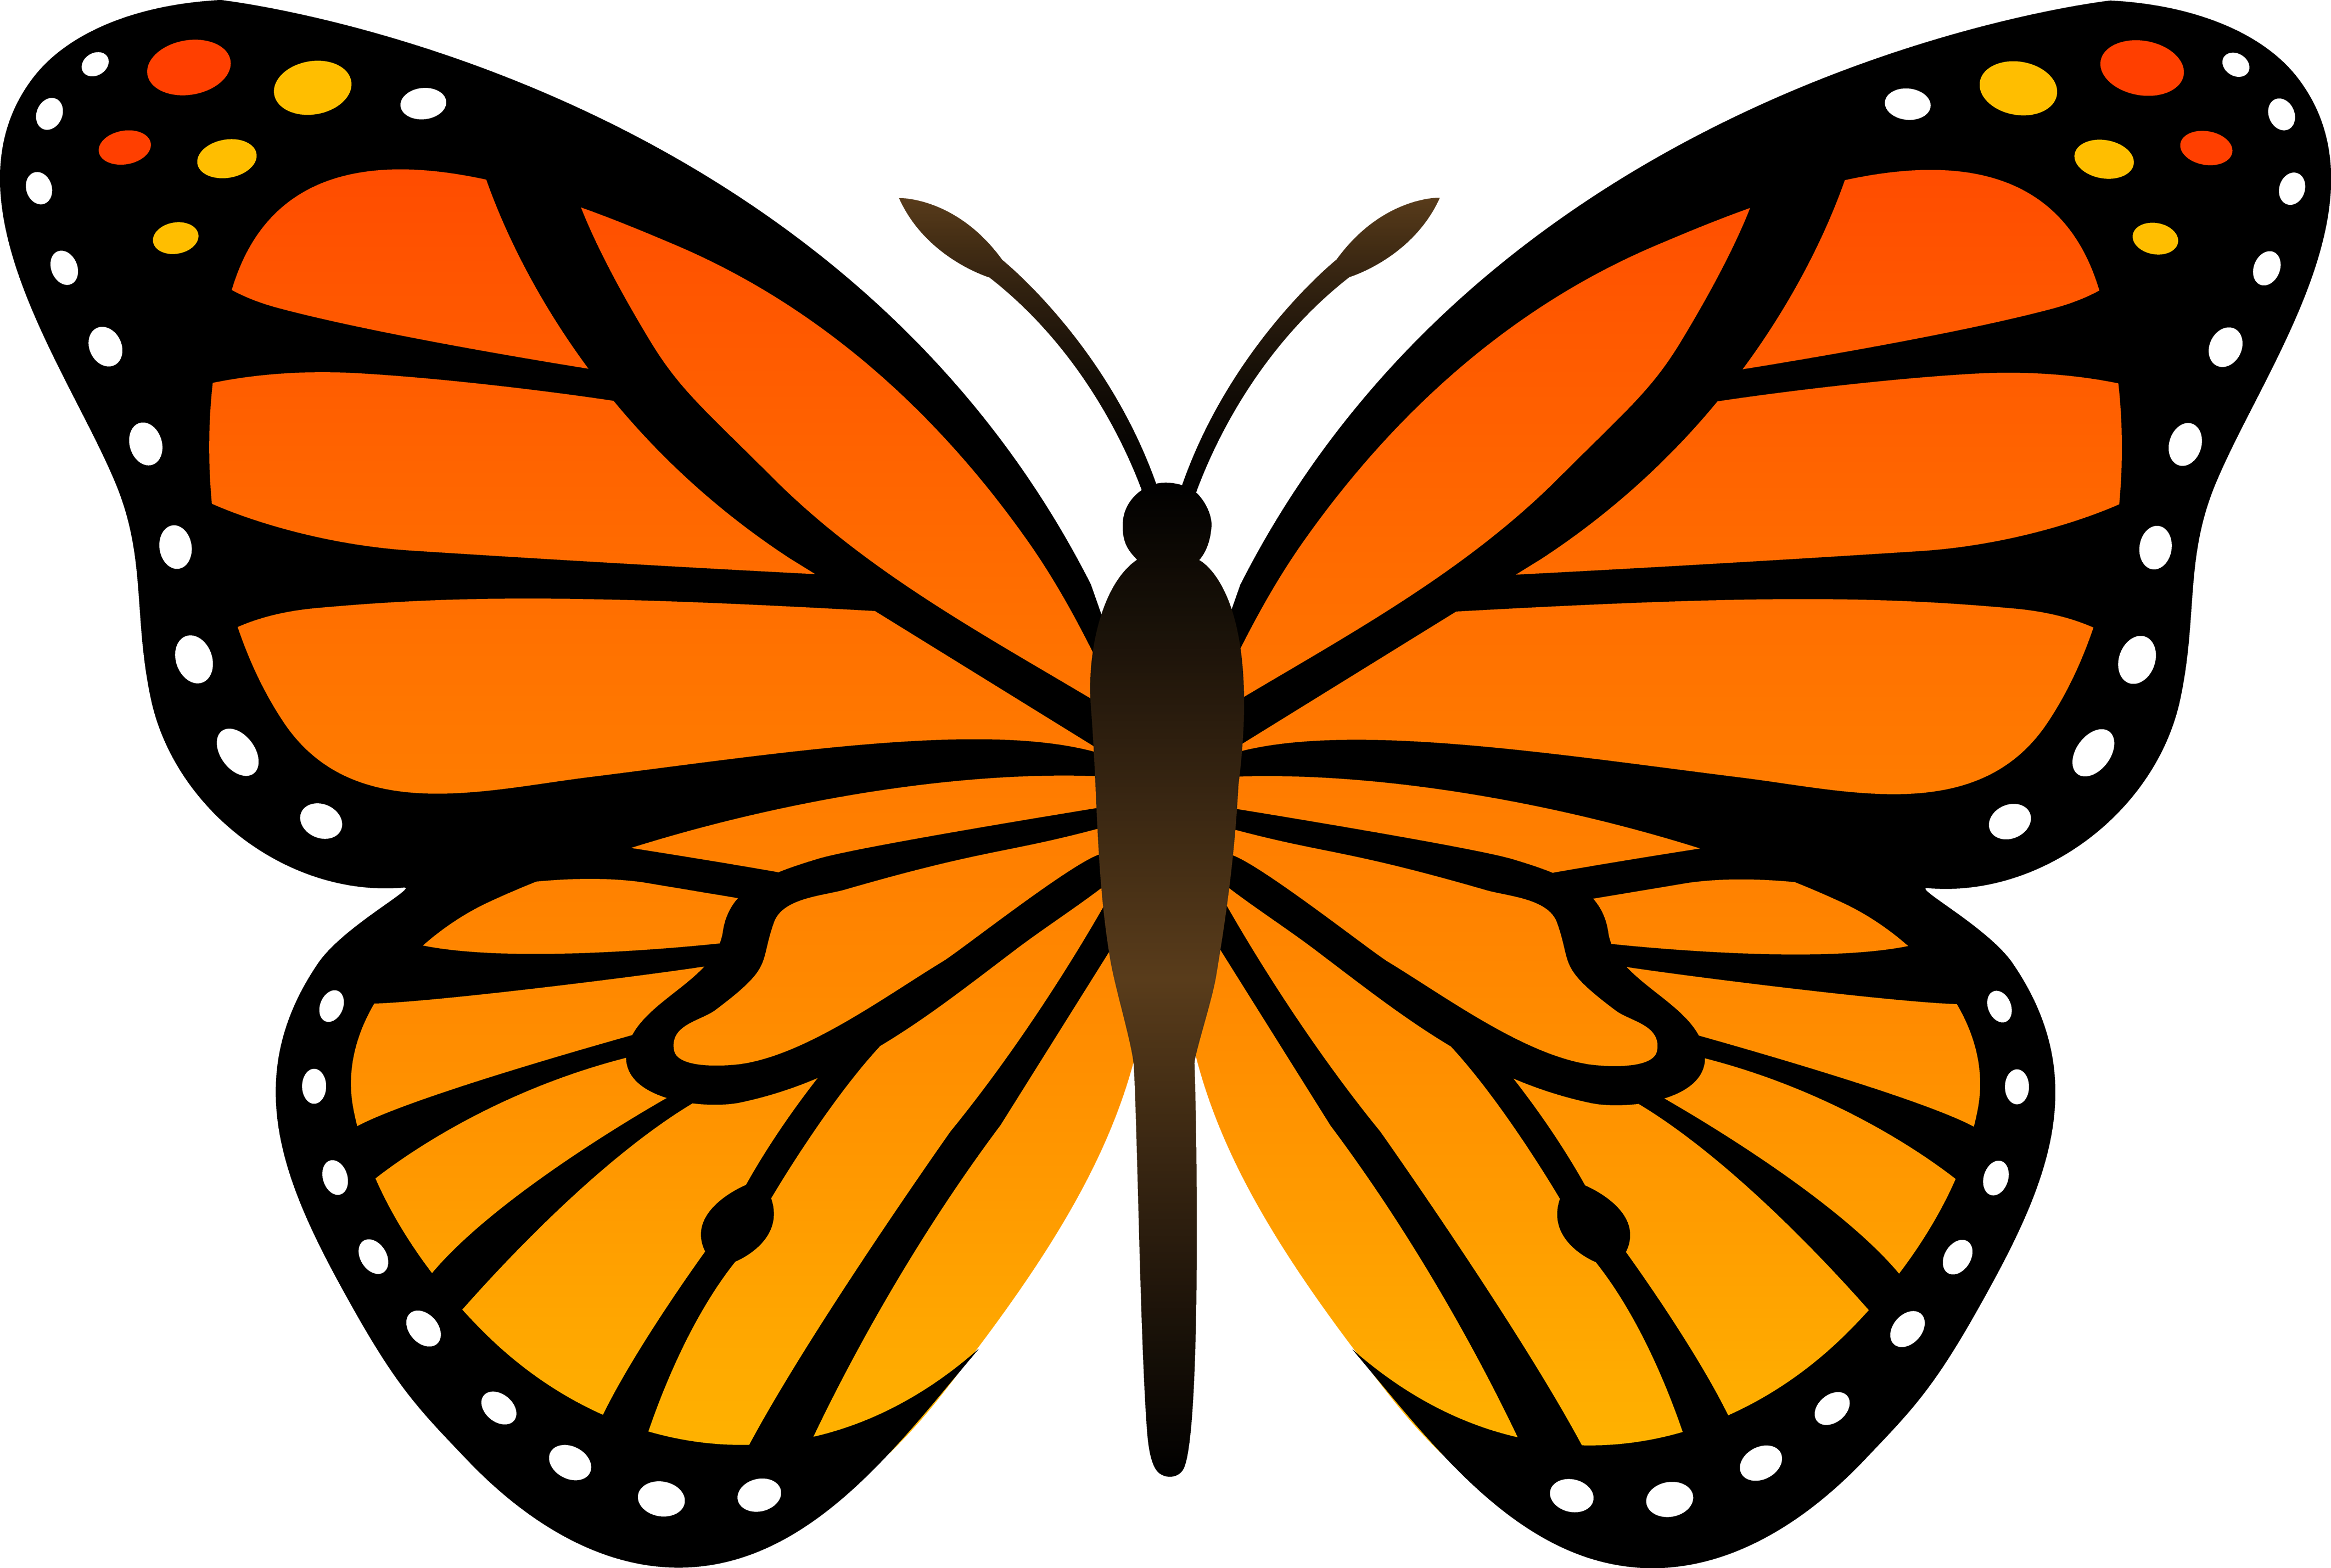 オレンジ色の蝶